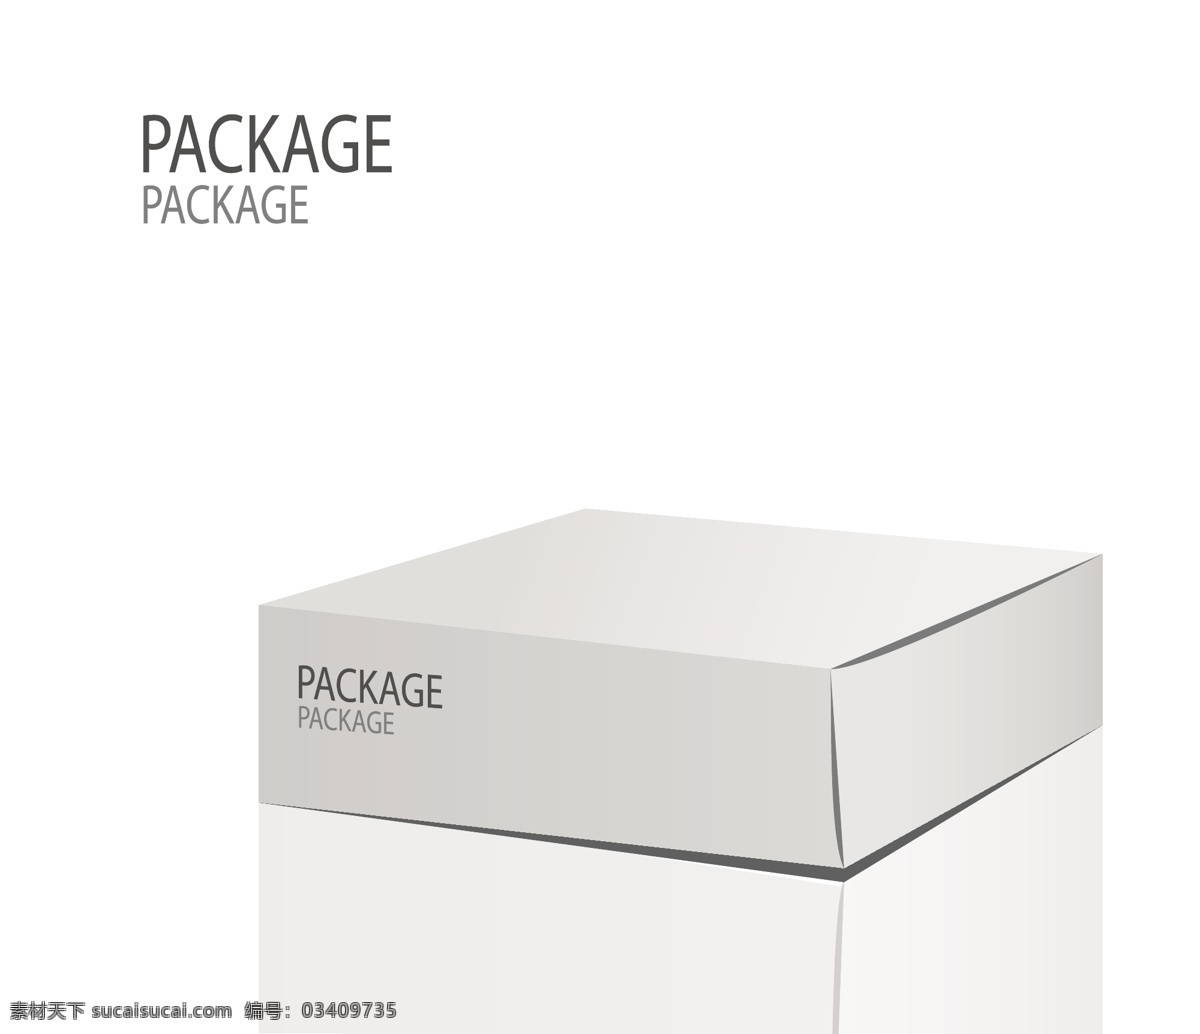 立体 包装盒 设计素材 样式 设计元素 高清 源文件 模型 广告装饰图案